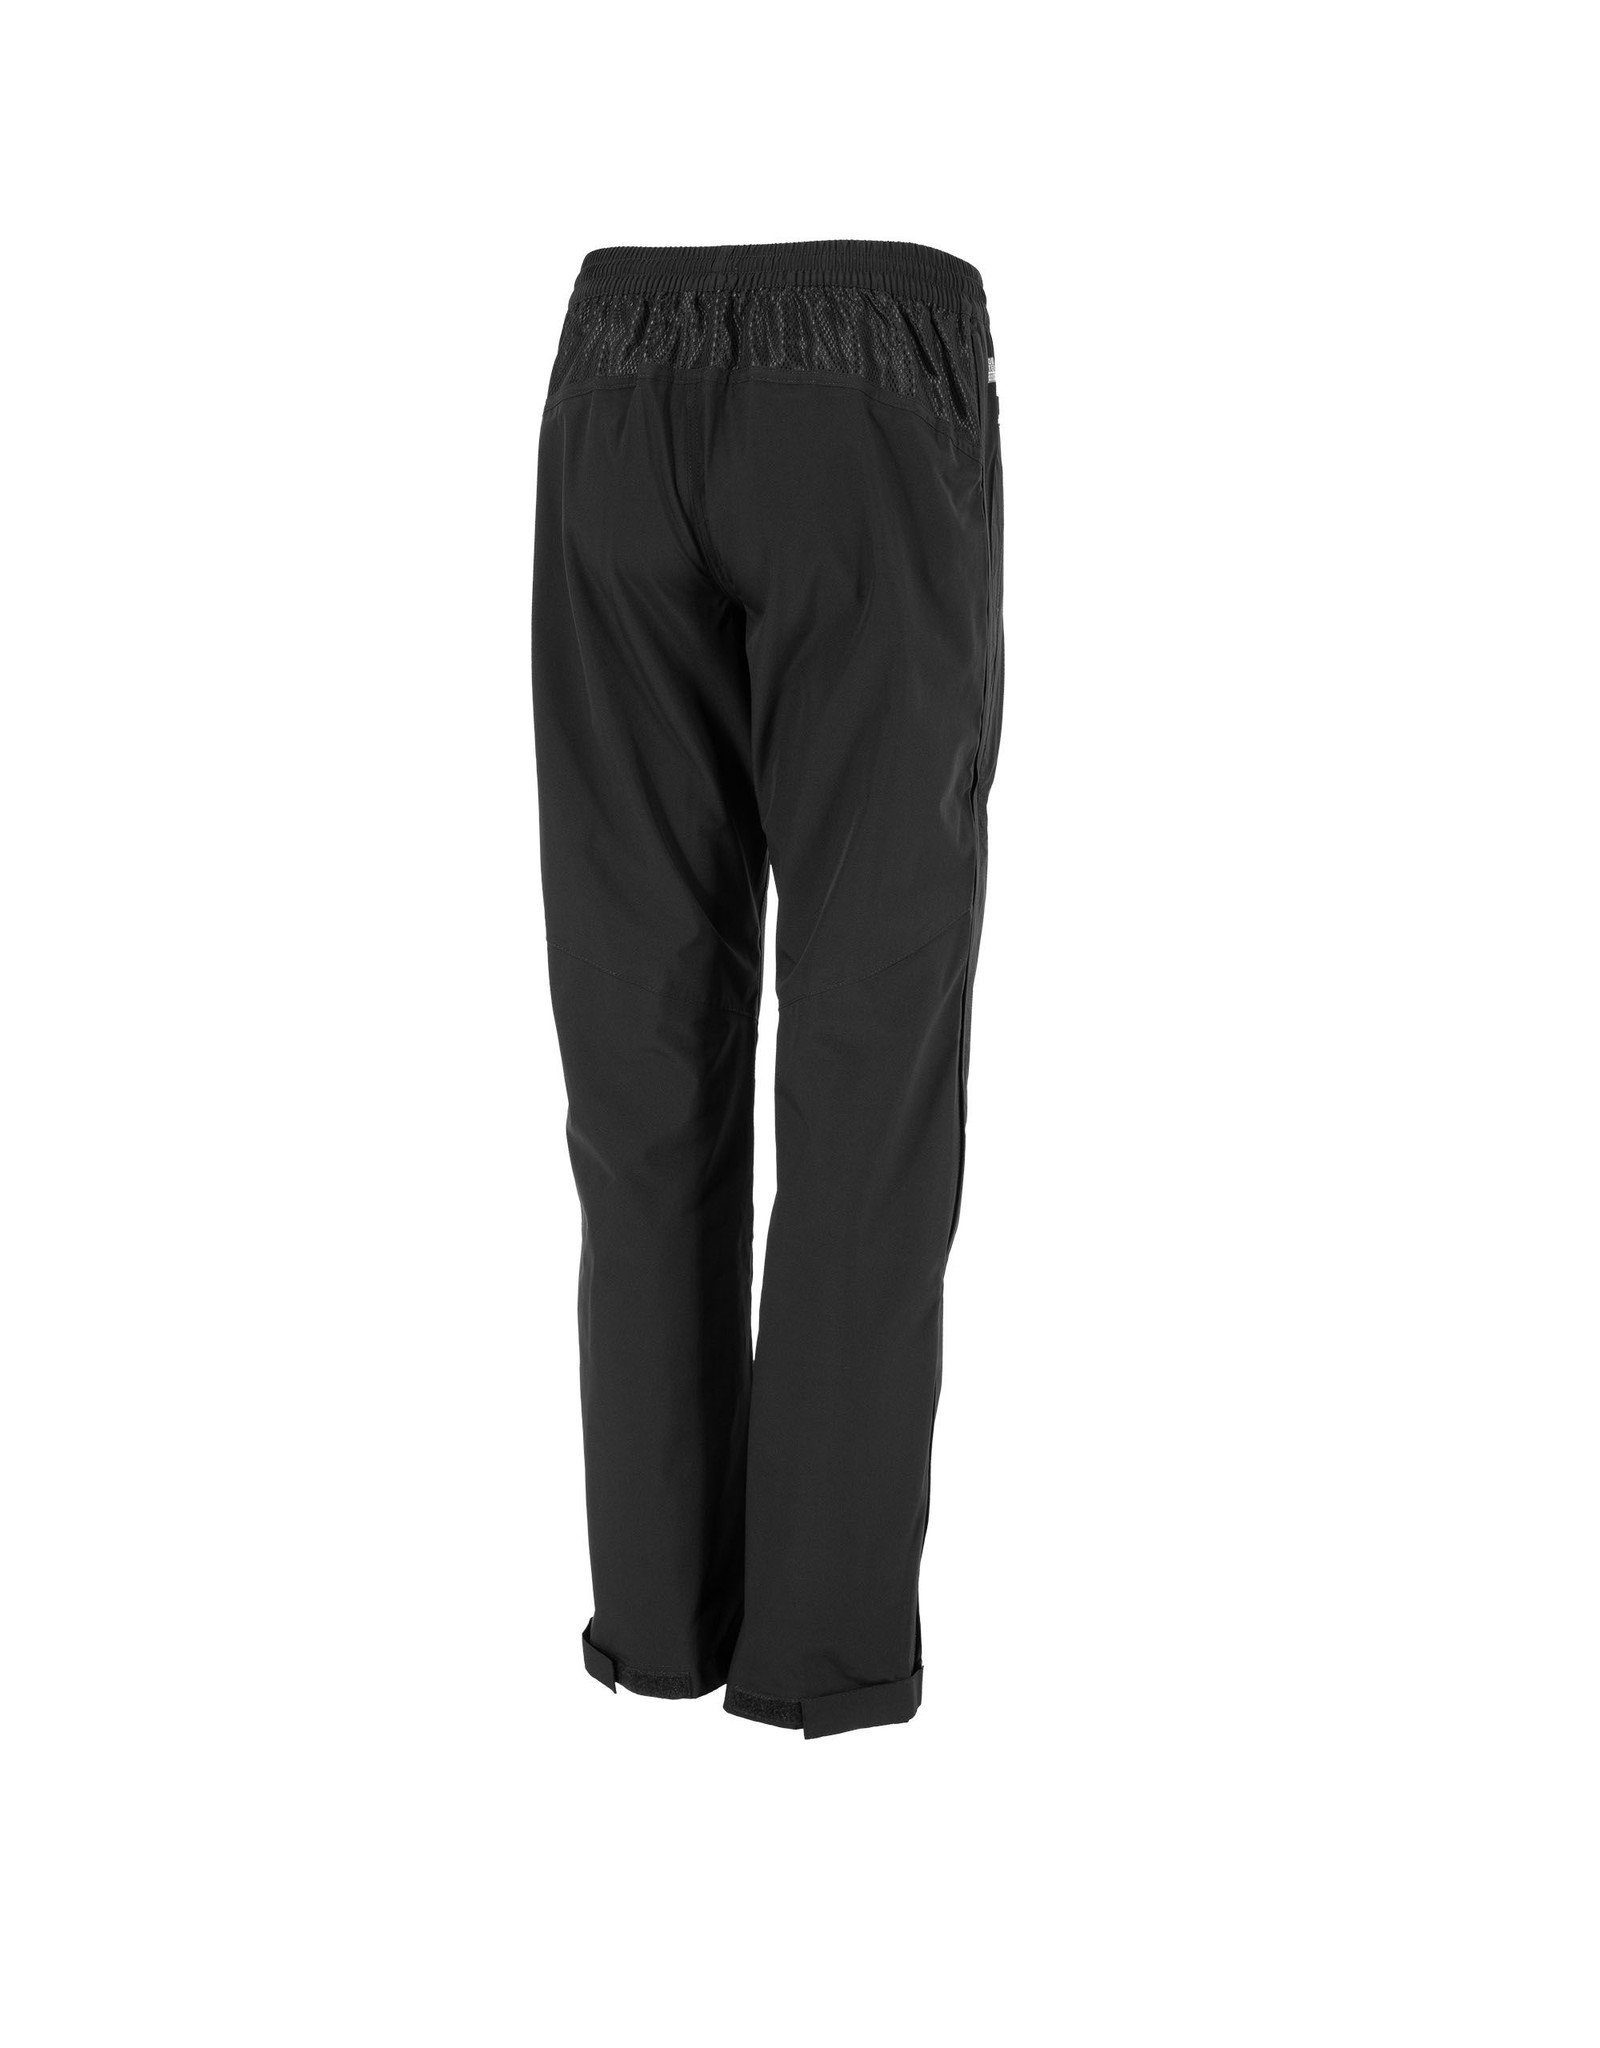 Reece Australia Cleve Breathable Pants Ladies-Black